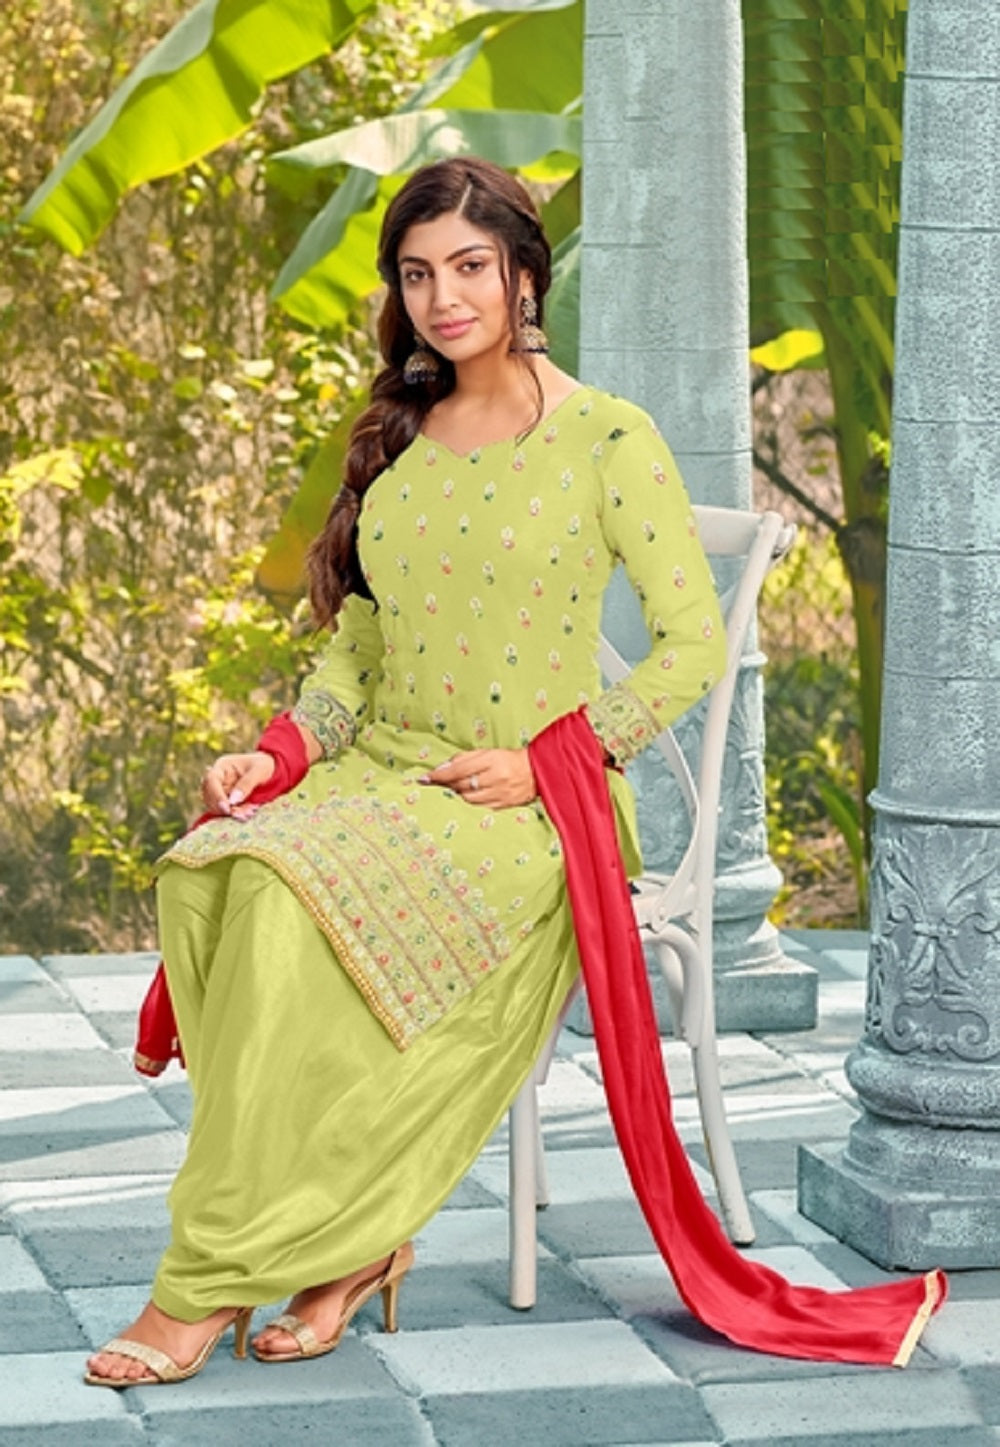 Parrot Green Angrakha Frock – Yellow Sharara - Bridal Mehndi Dress